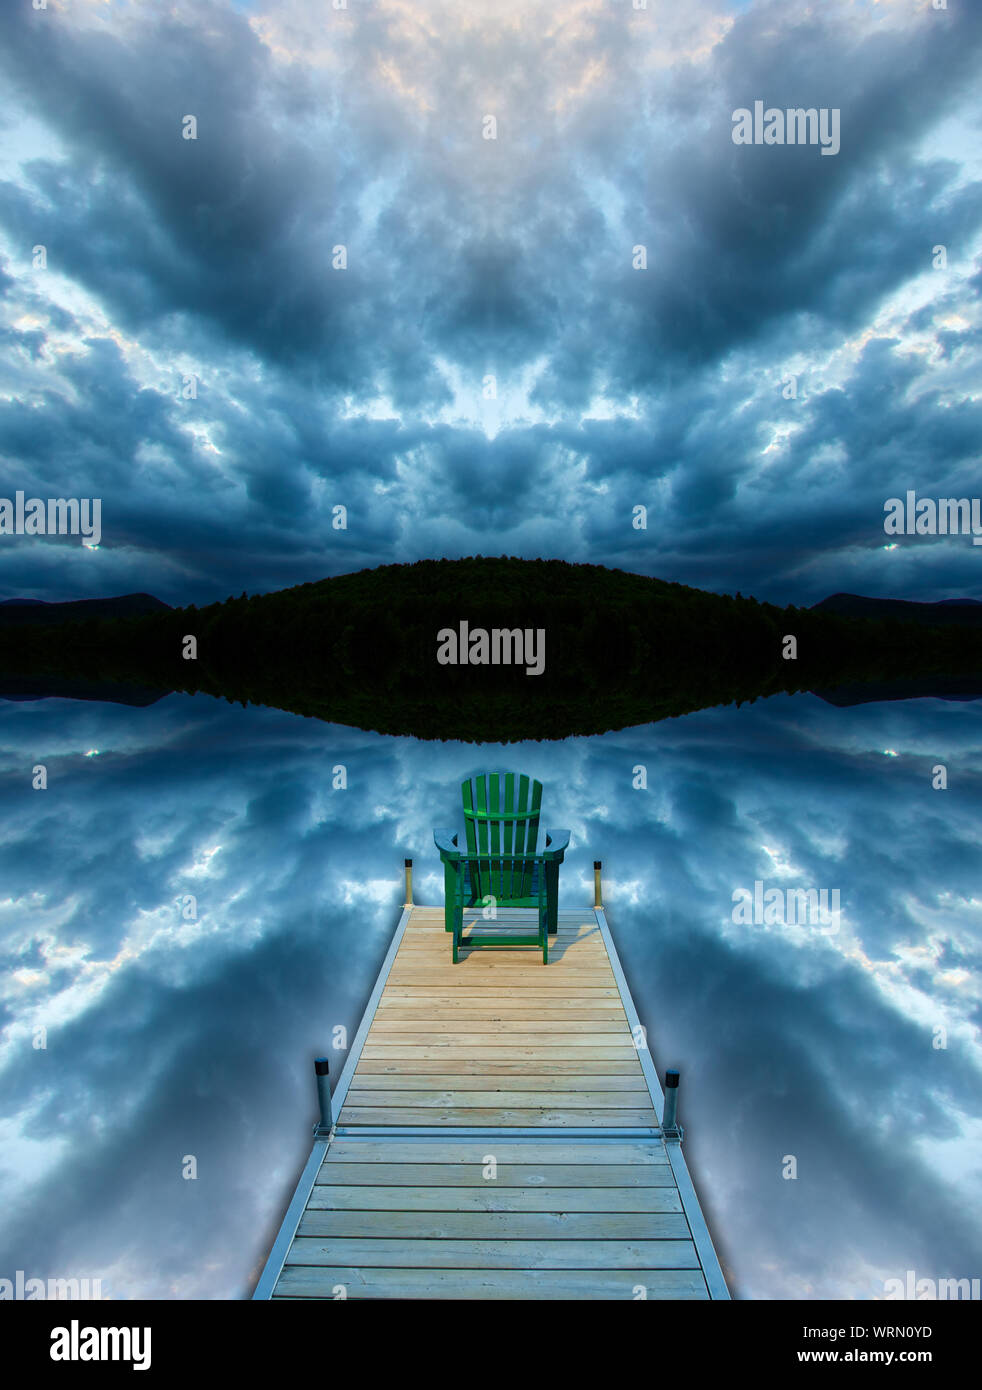 Image manipulée numériquement d'une chaise adirondack assis sur un quai avec miroir de nuages orageux et un fond de montagne. Banque D'Images